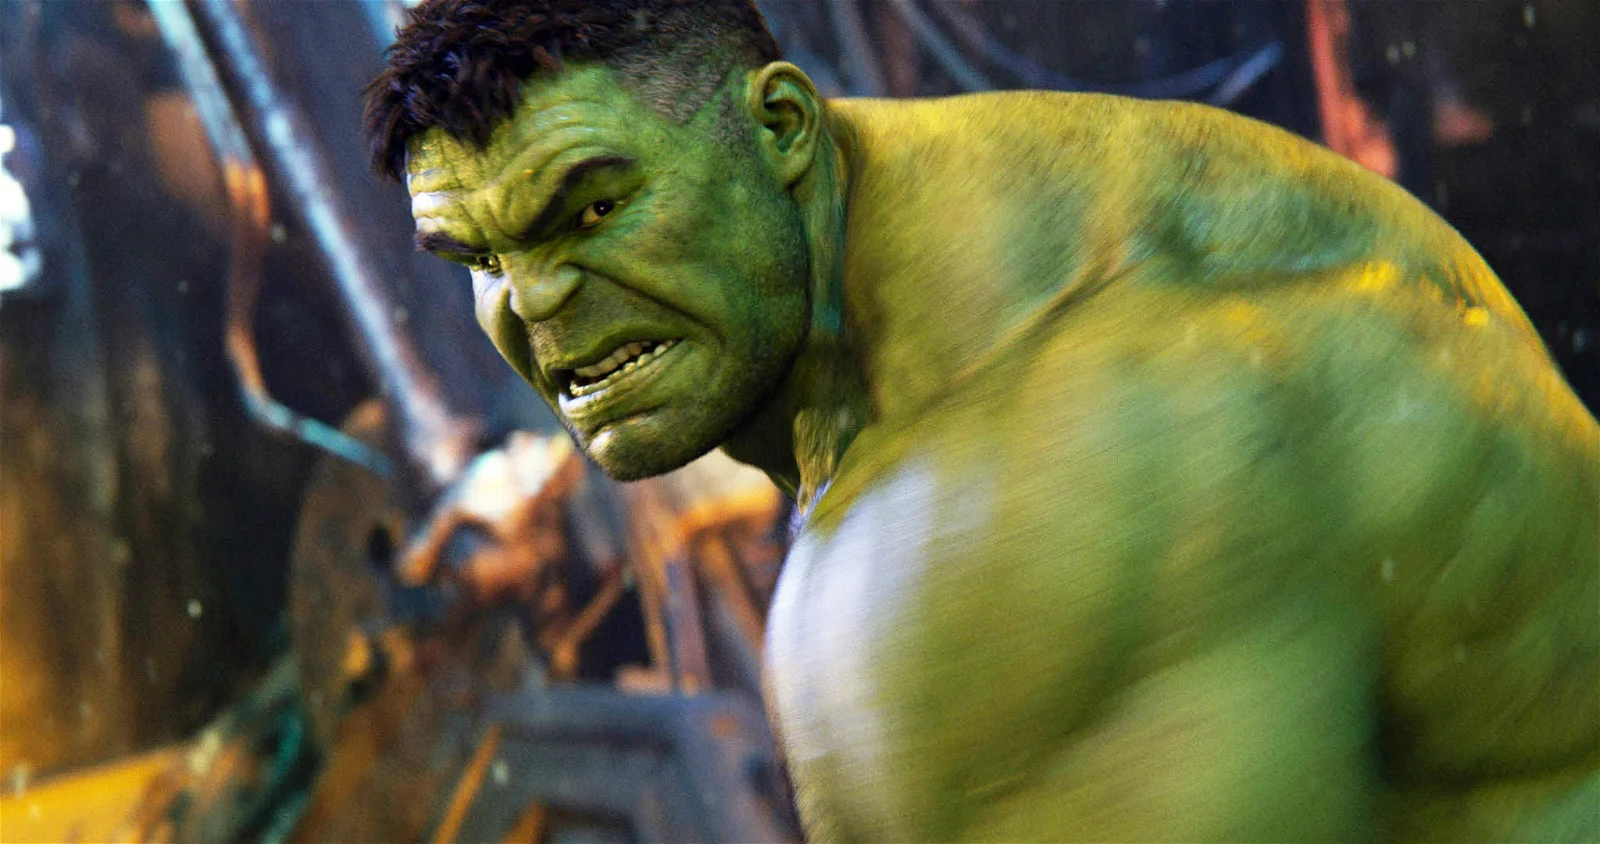 Mark Ruffalo as The Hulk